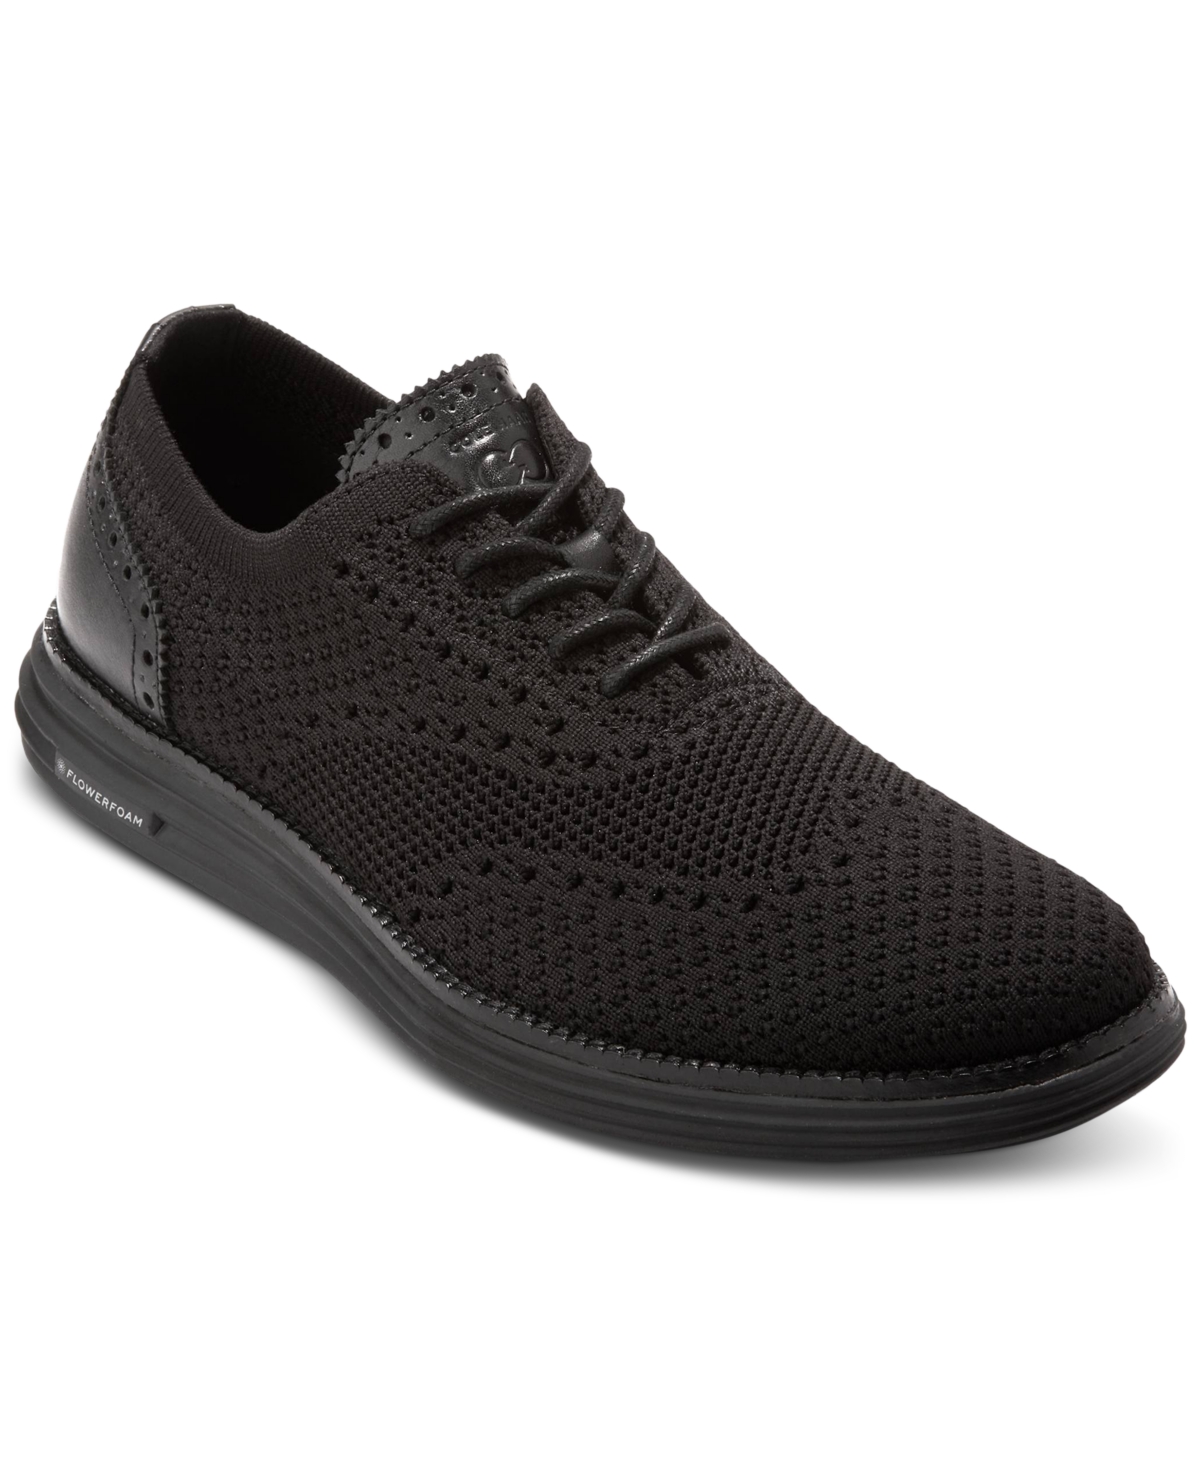 Men's ÃriginalGrand Remastered Stitchlite Lace-Up Wingtip Oxford Sneakers - Black/ Black